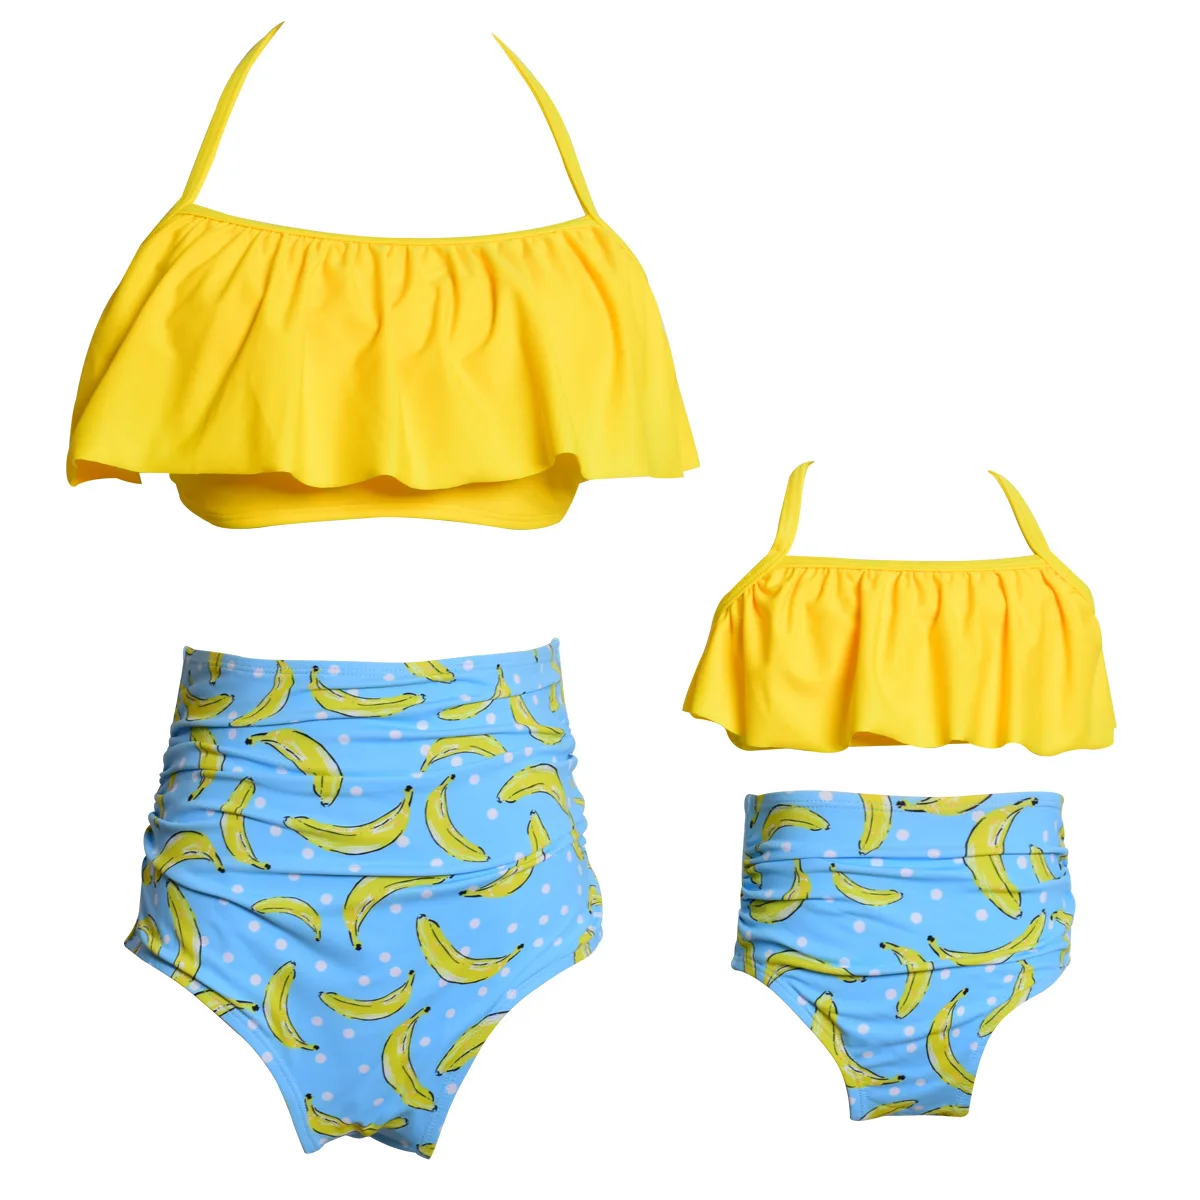 

2022 женский купальник для пляжа, семейный образ, бикини для мамы и меня, подходящие платья, наряды